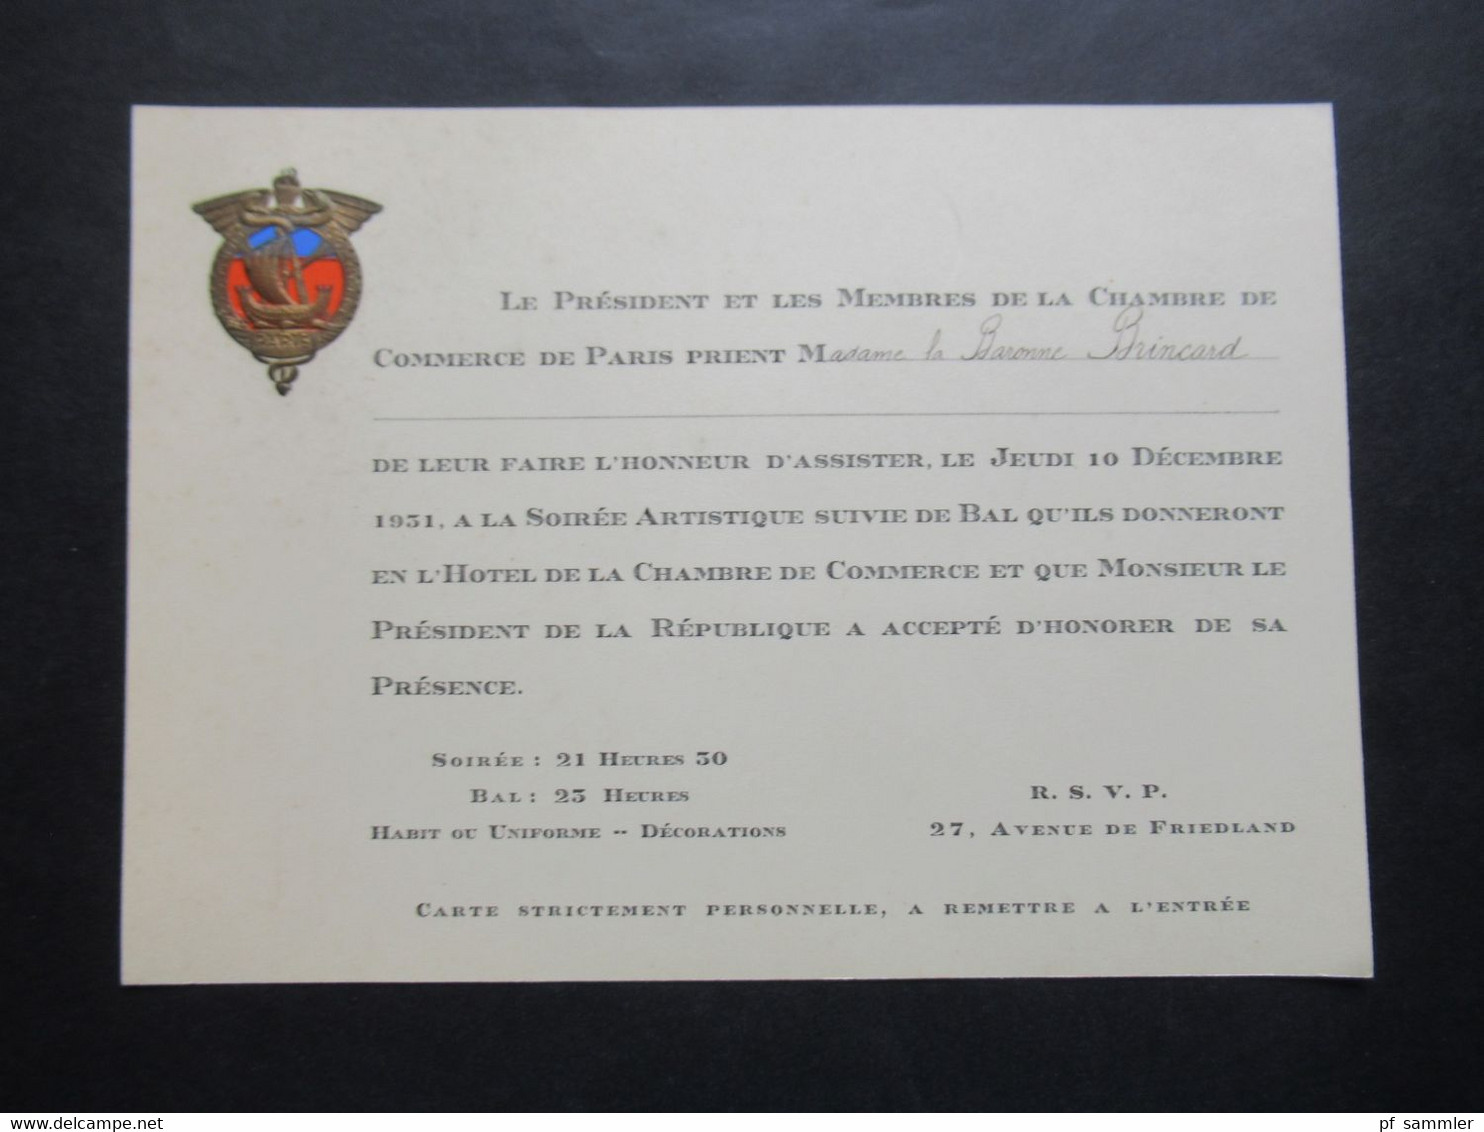 dekorative Karten / 2x Einladung Paris 10.12.1931 Le President et les Membres de la Chambre de Commerce de Paris